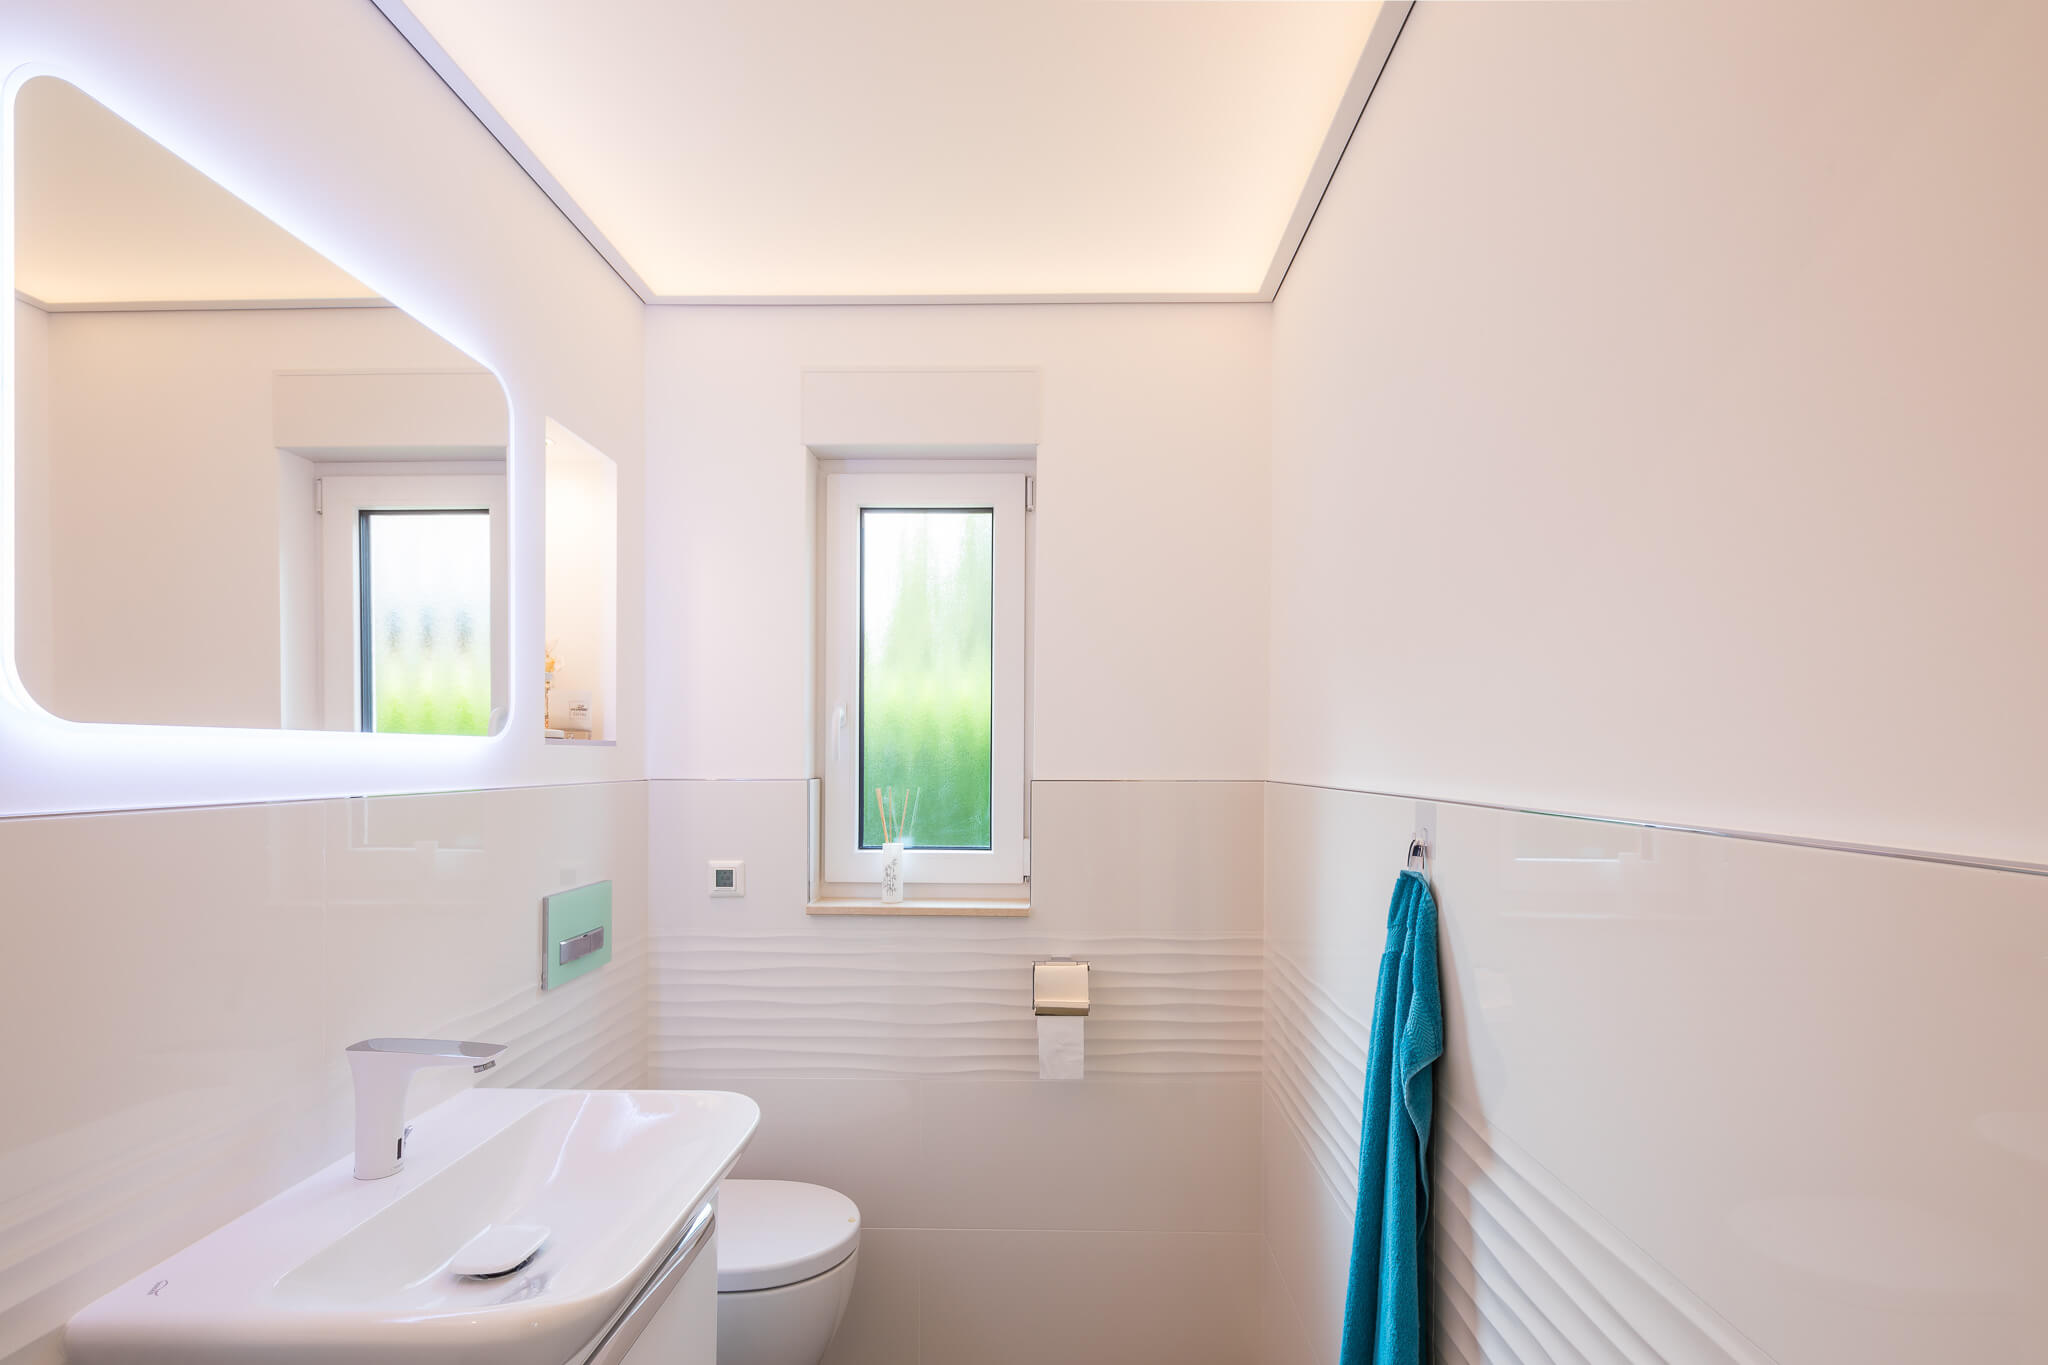 moderne badkamer lichtdoorlatend spanplafond plameco